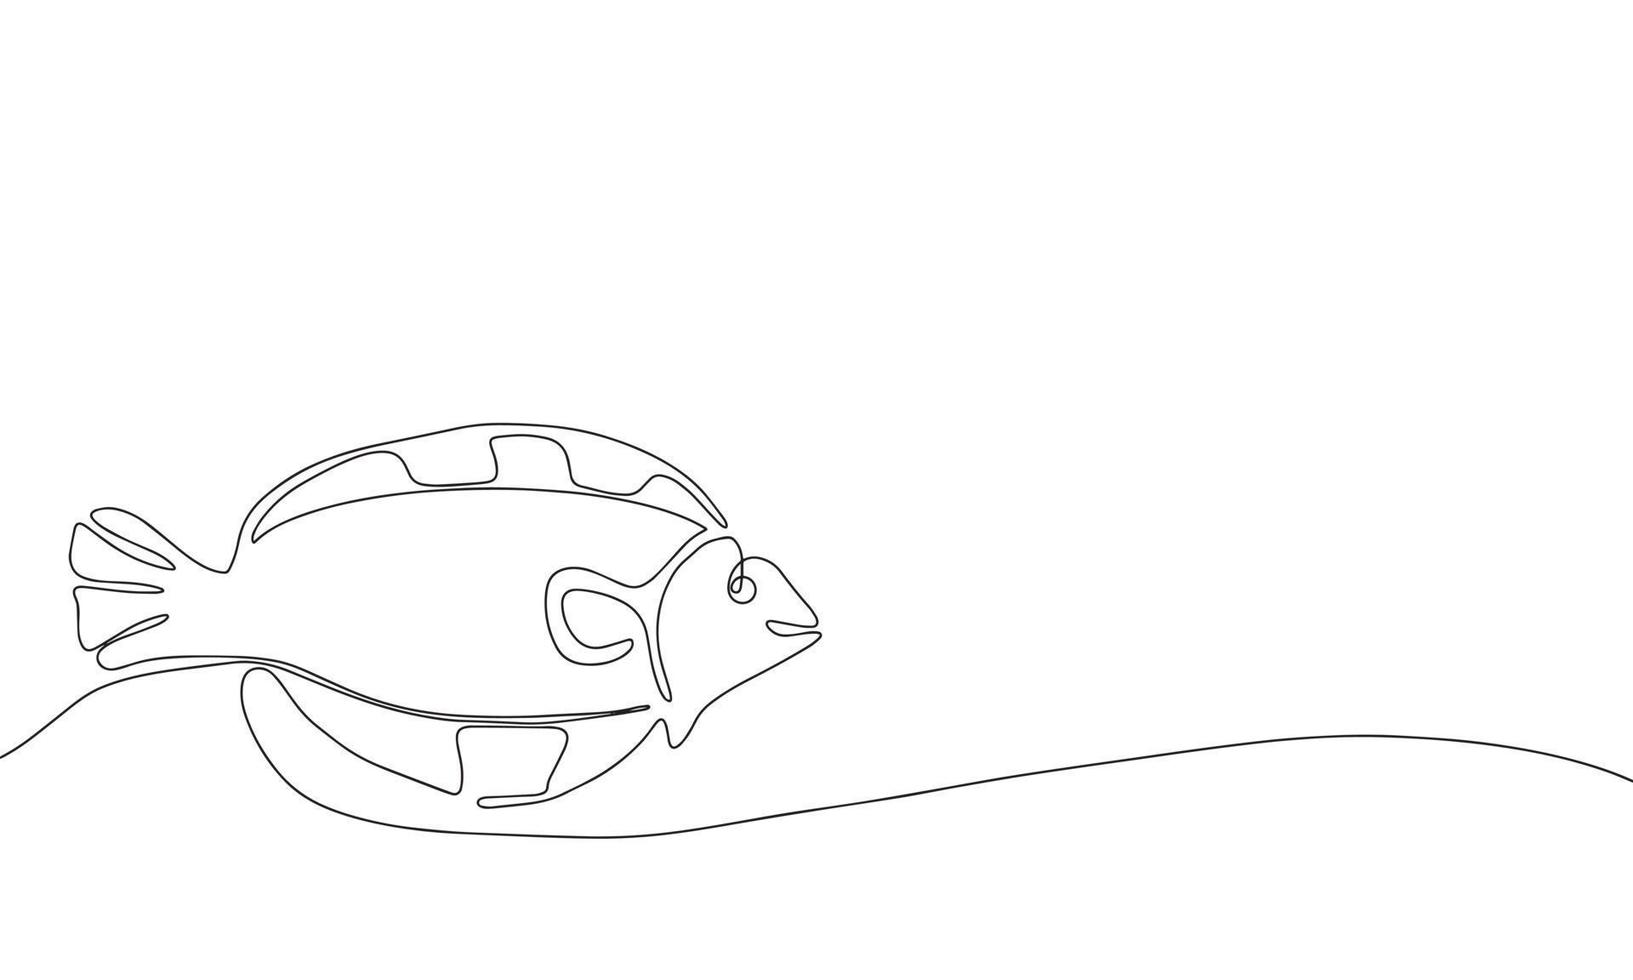 pesce astratto in stile di disegno artistico a linea continua. schizzo lineare nero minimalista su sfondo bianco. illustrazione vettoriale